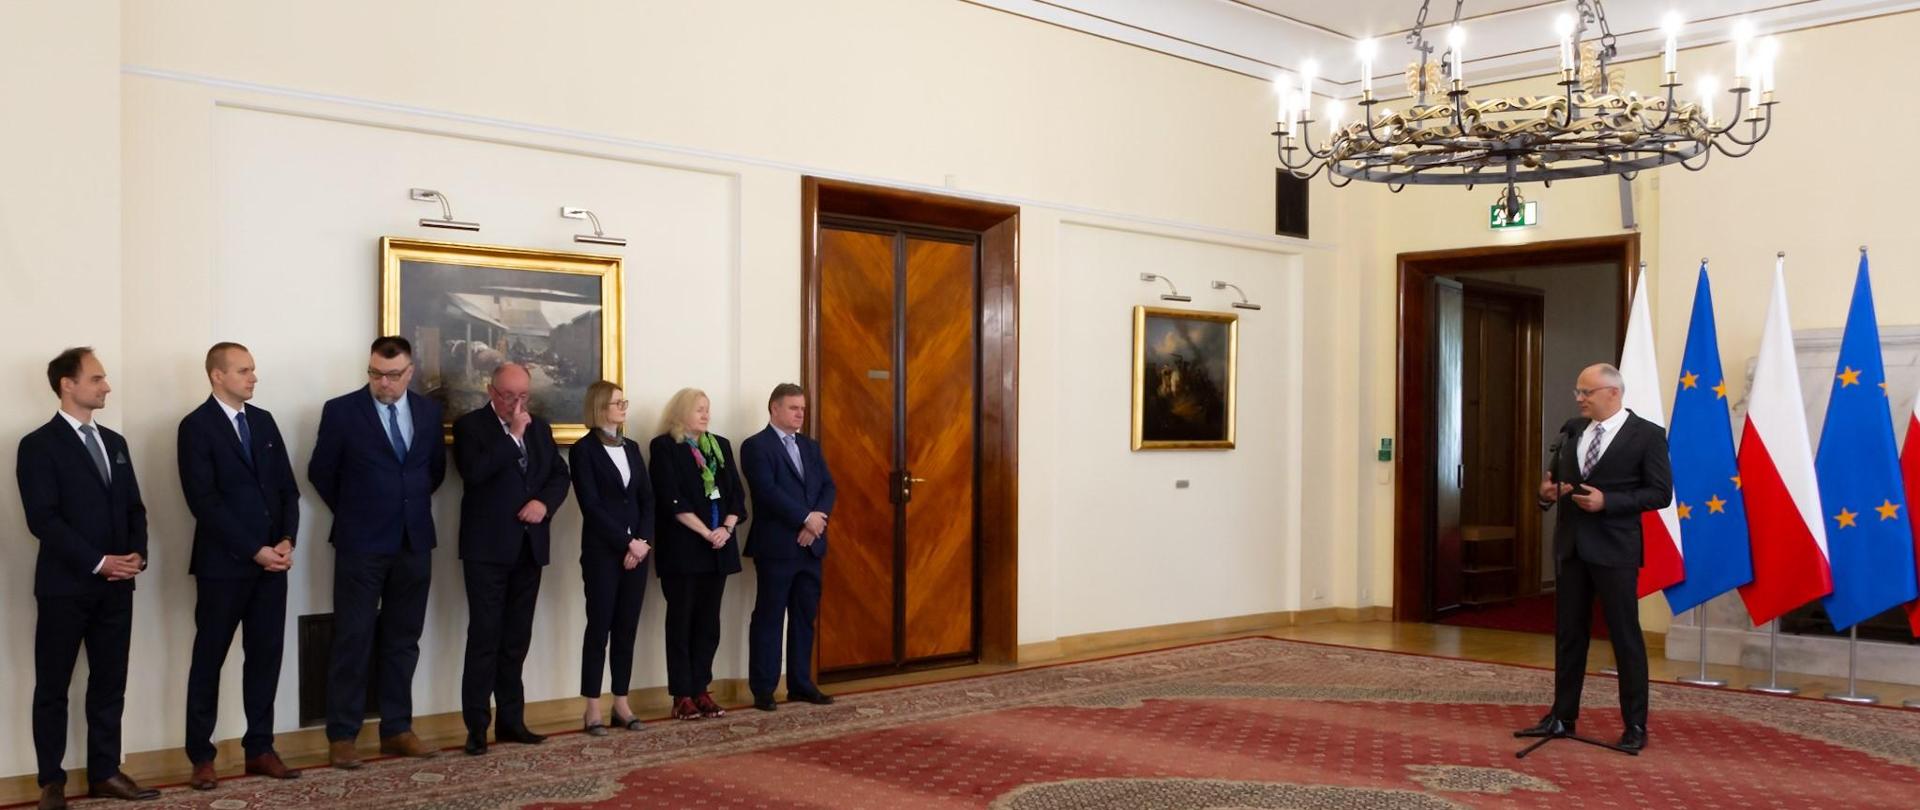 Grupa kobiet i mężczyzn stoi przy ścianie, niedaleko nich mężczyzna przemawia do mikrofonu, a za nim stoją flagi Polski i Unii Europejskiej 